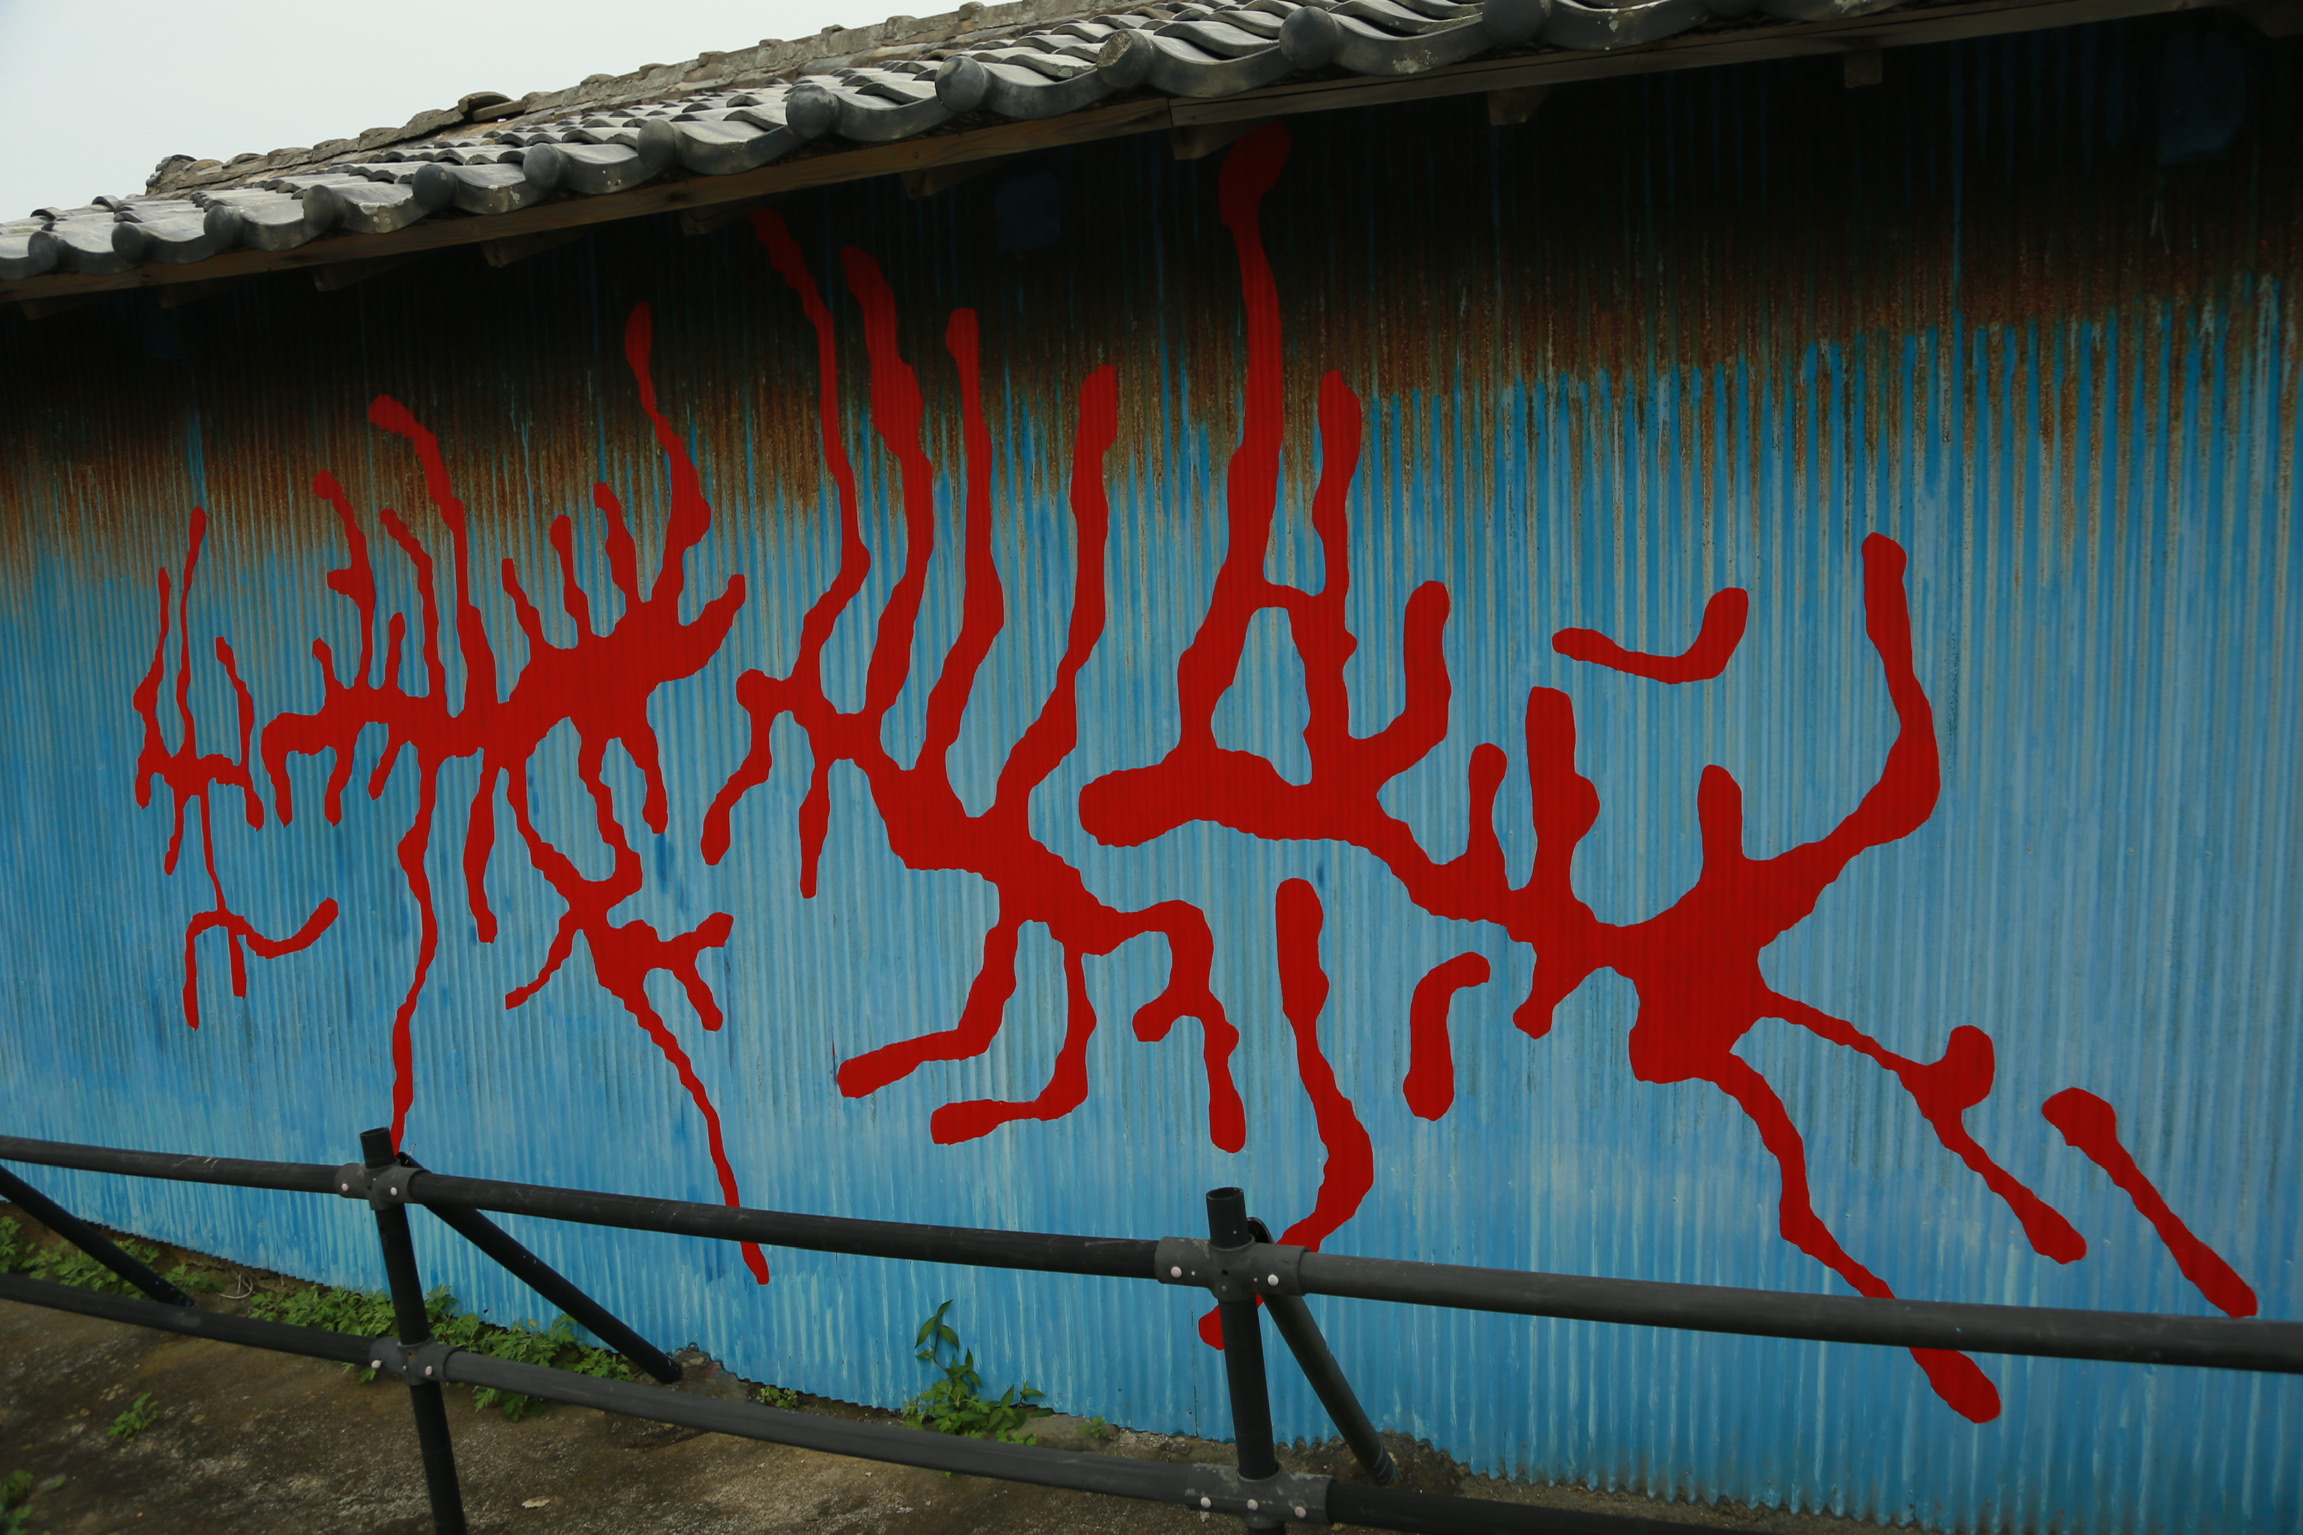 昆虫の這った跡を描いたペインティング。独特な赤色の絵の具を用いて製作されている